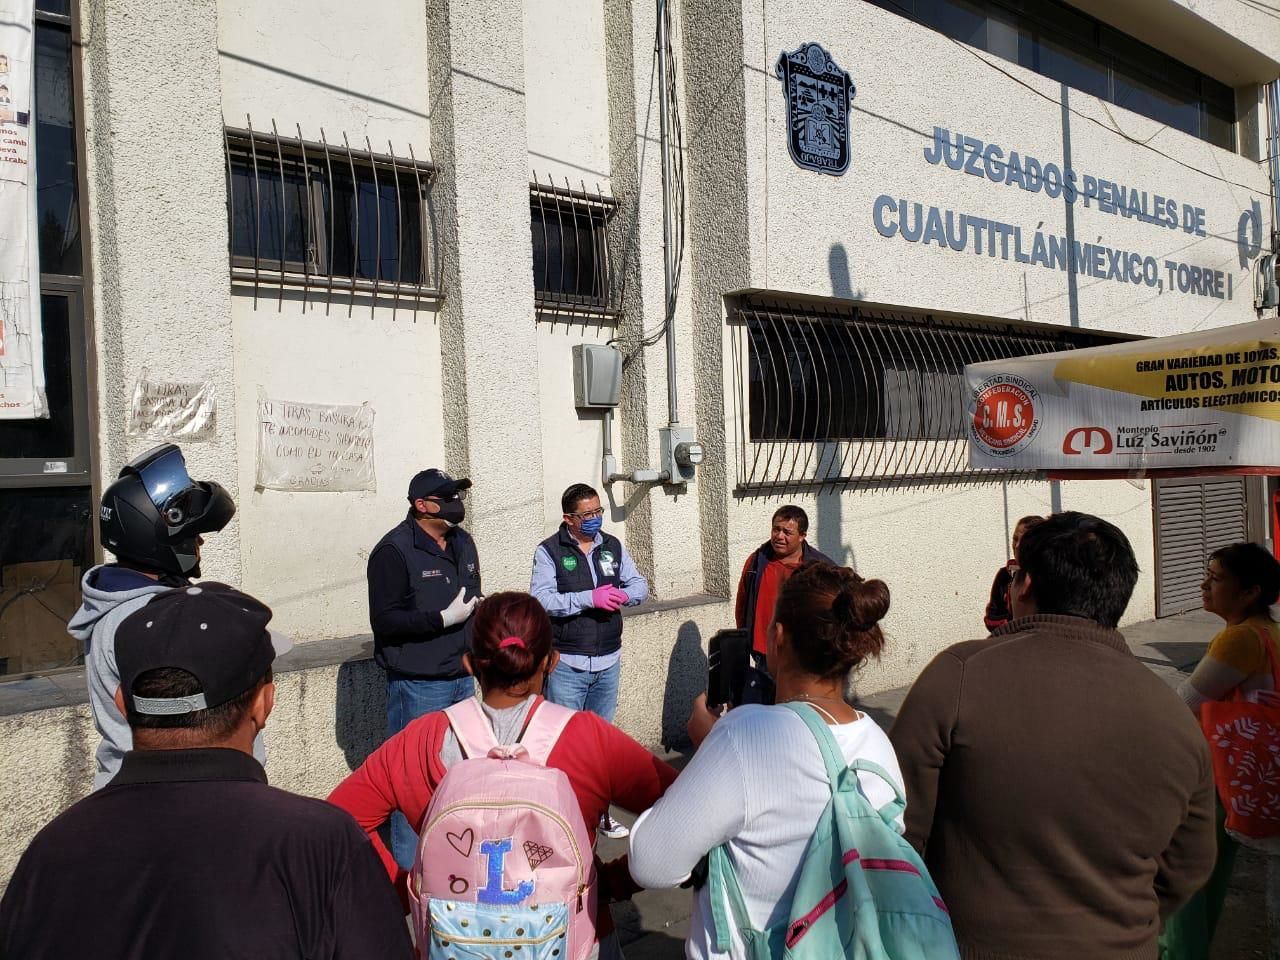 La CODHEM implementa medidas preventivas contra COVID -19 en penal de Cuautitlán